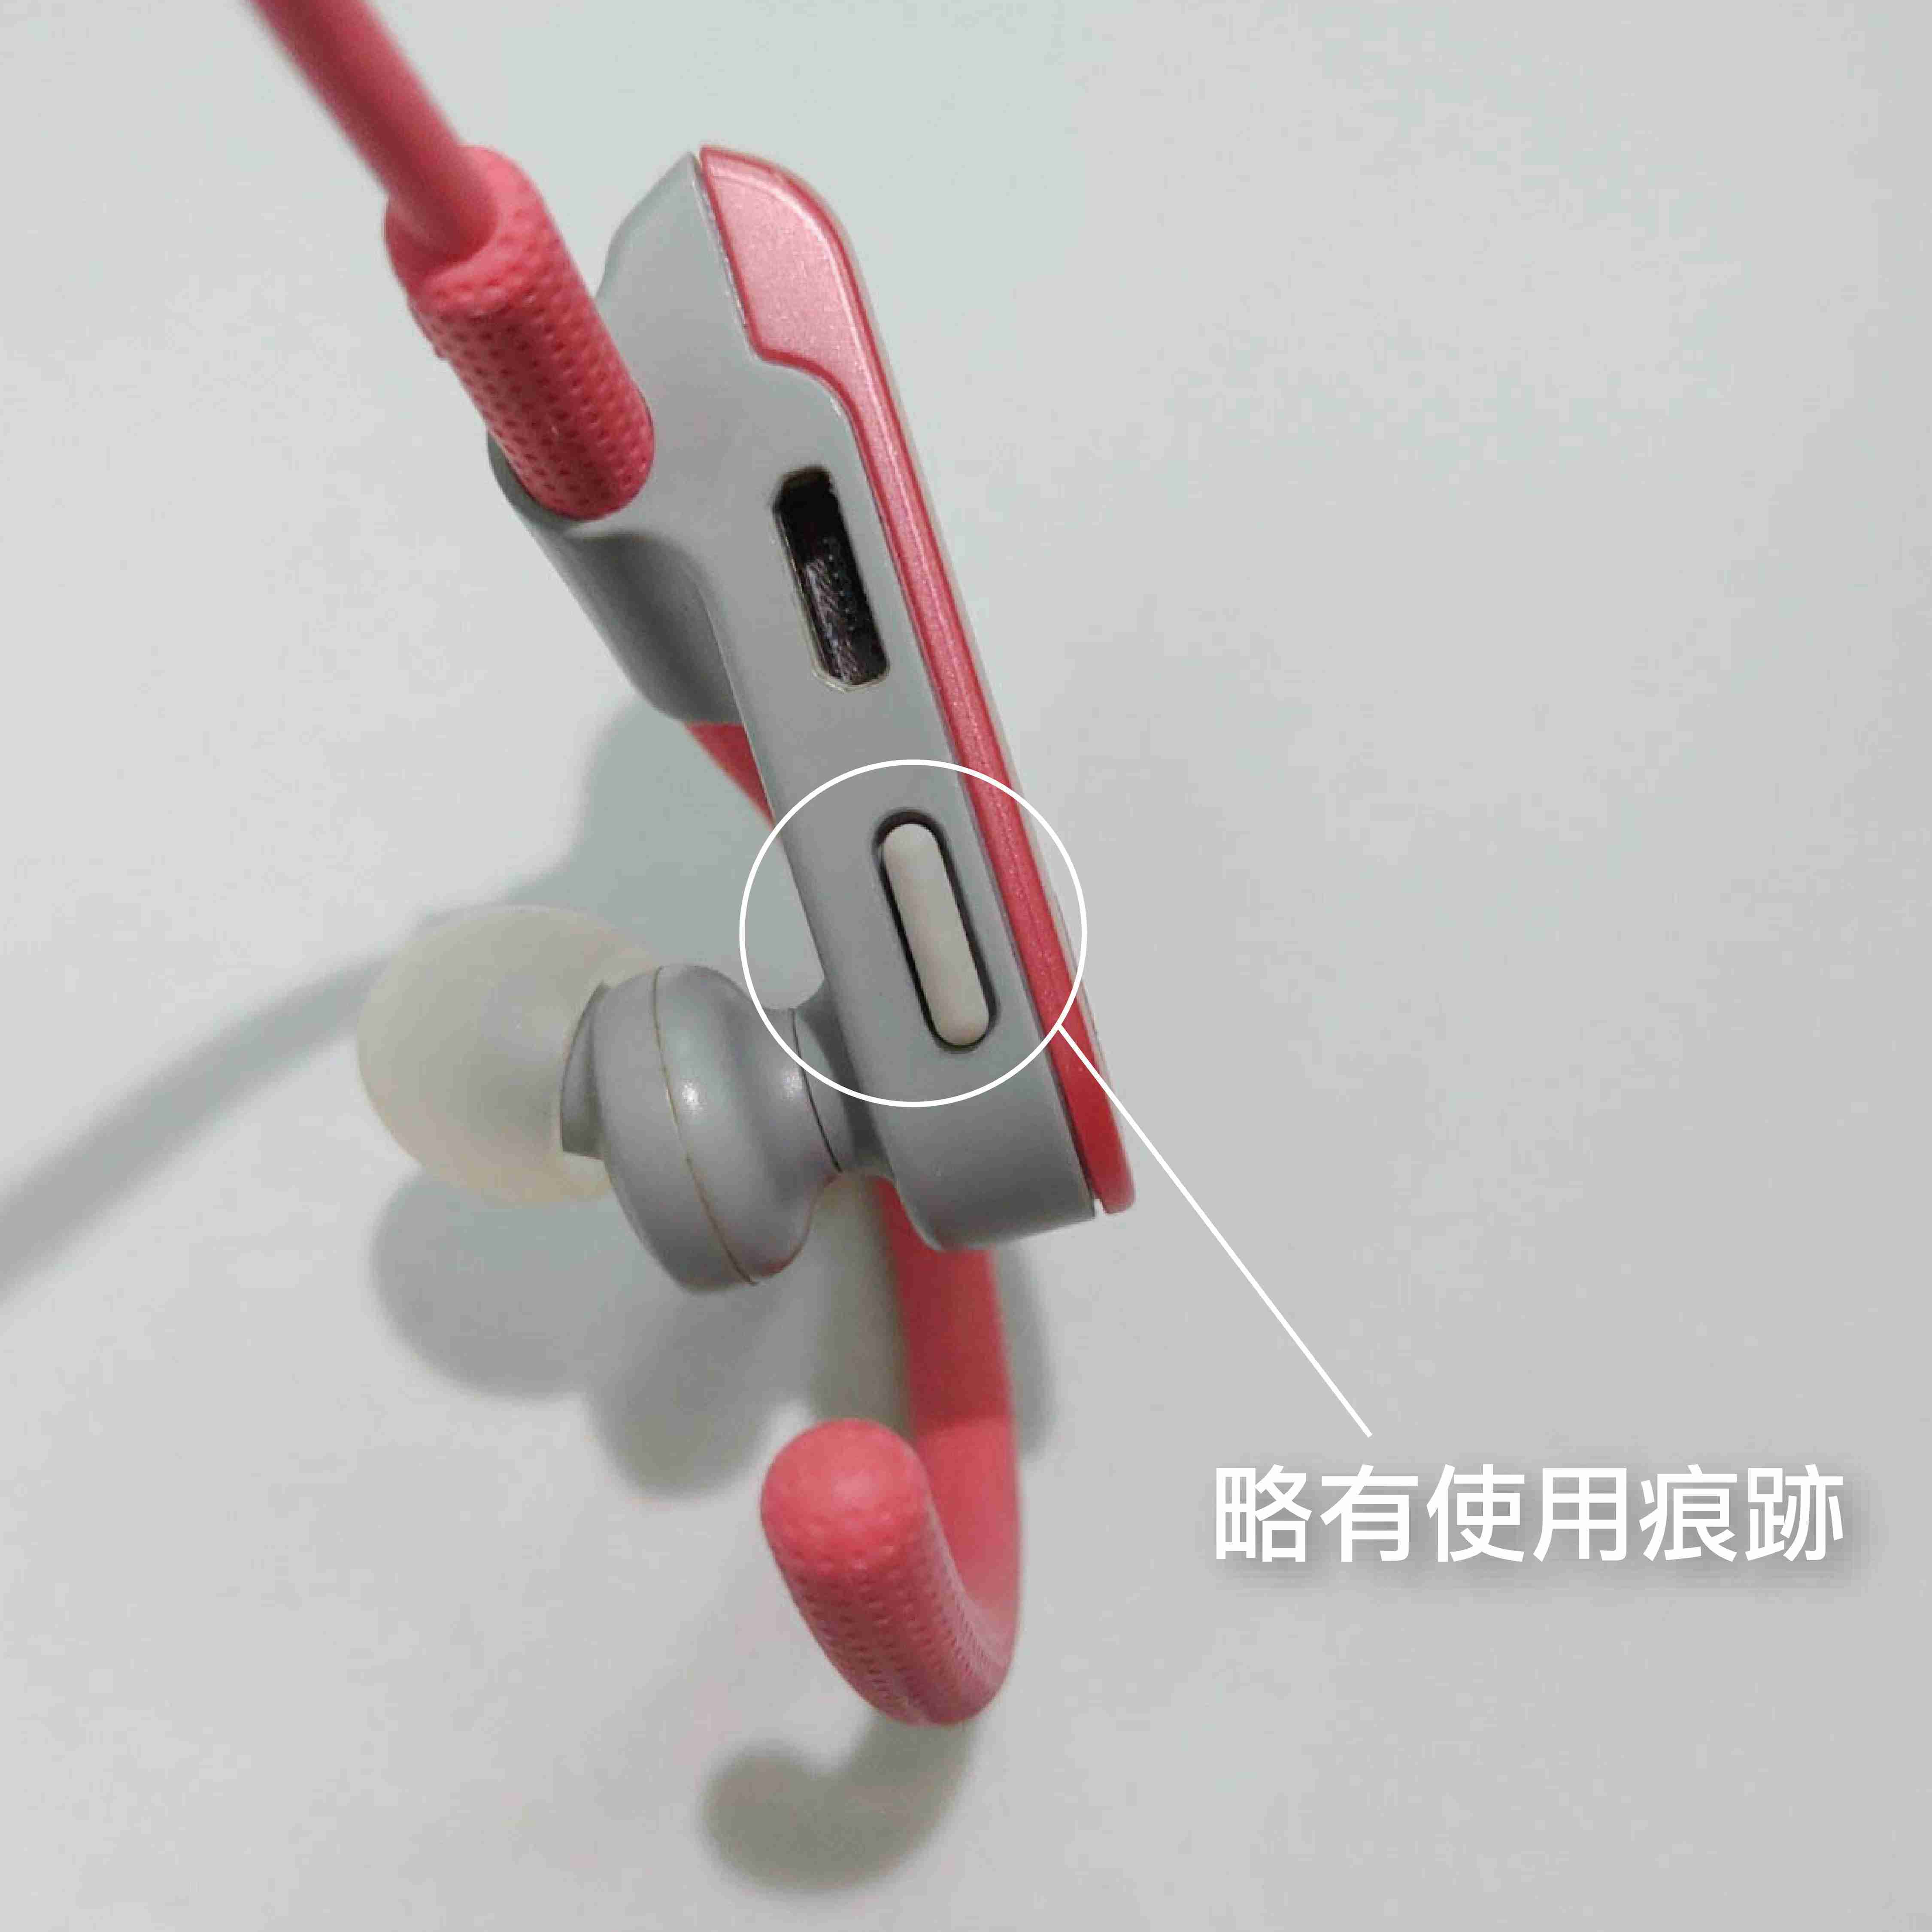 【福利機A組】鐵三角 ATH-SPORT50BT 粉色 無線 藍芽 運動耳機 防水 | 金曲音響